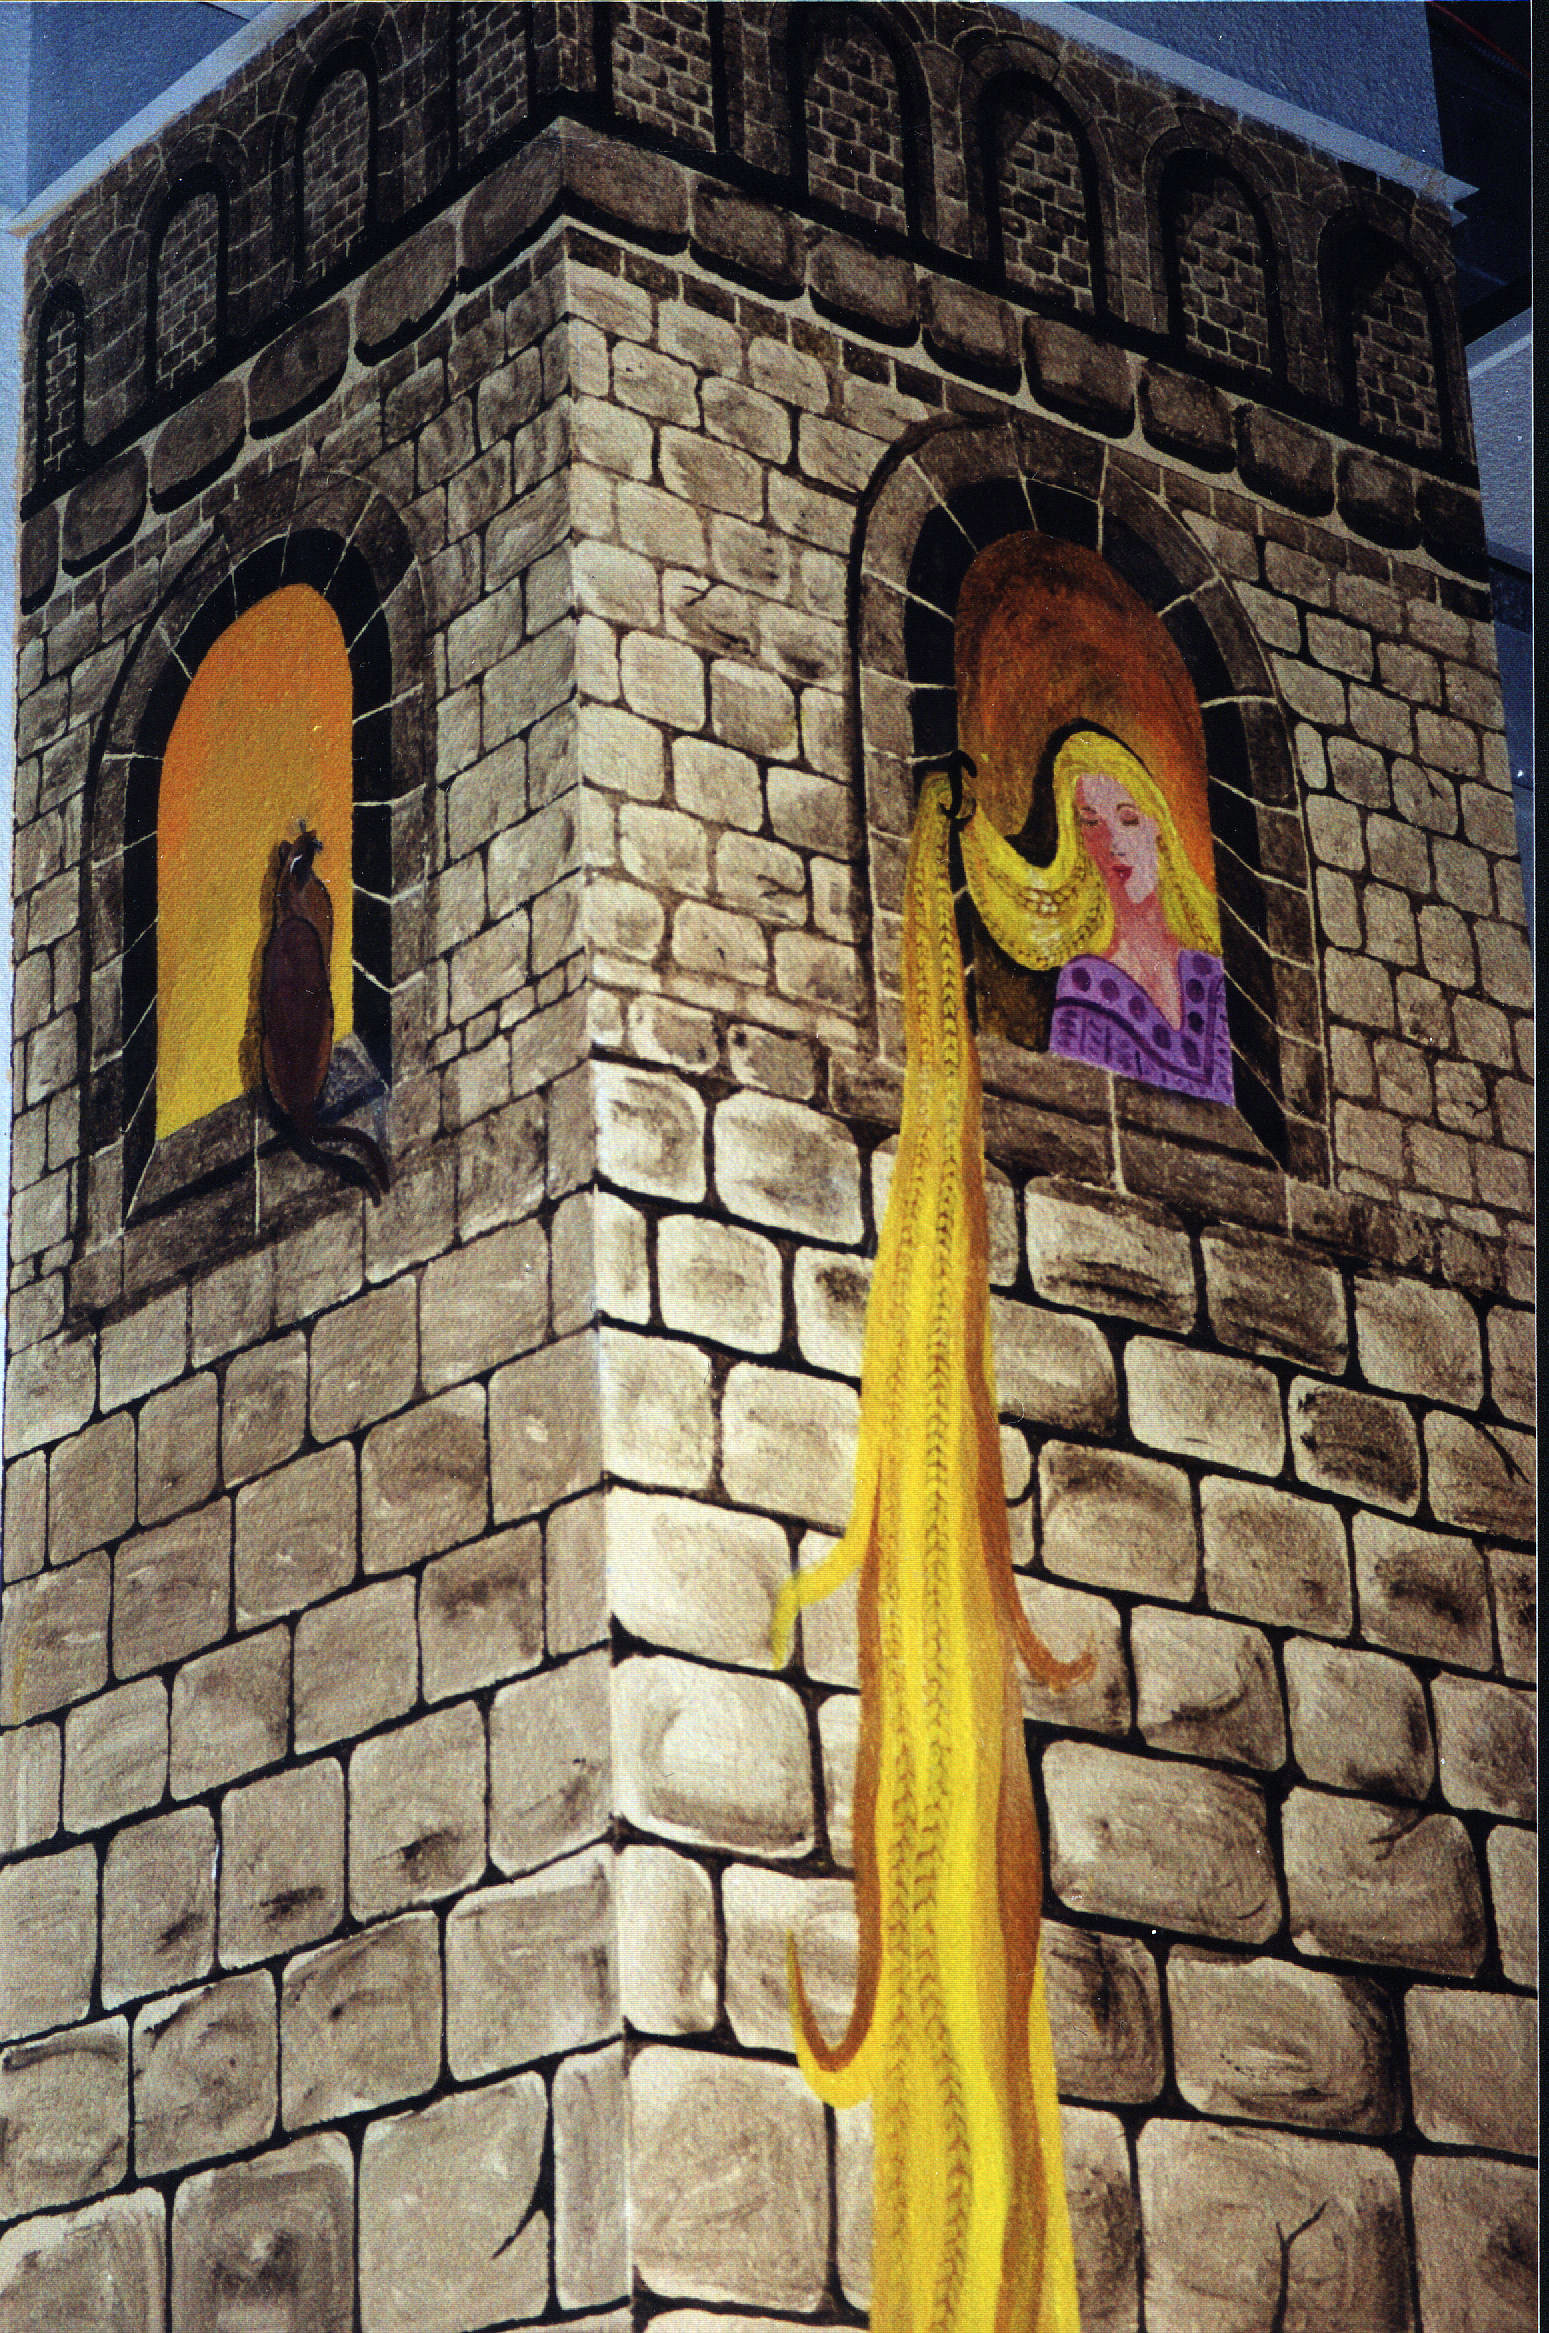 Rapenzel's castle